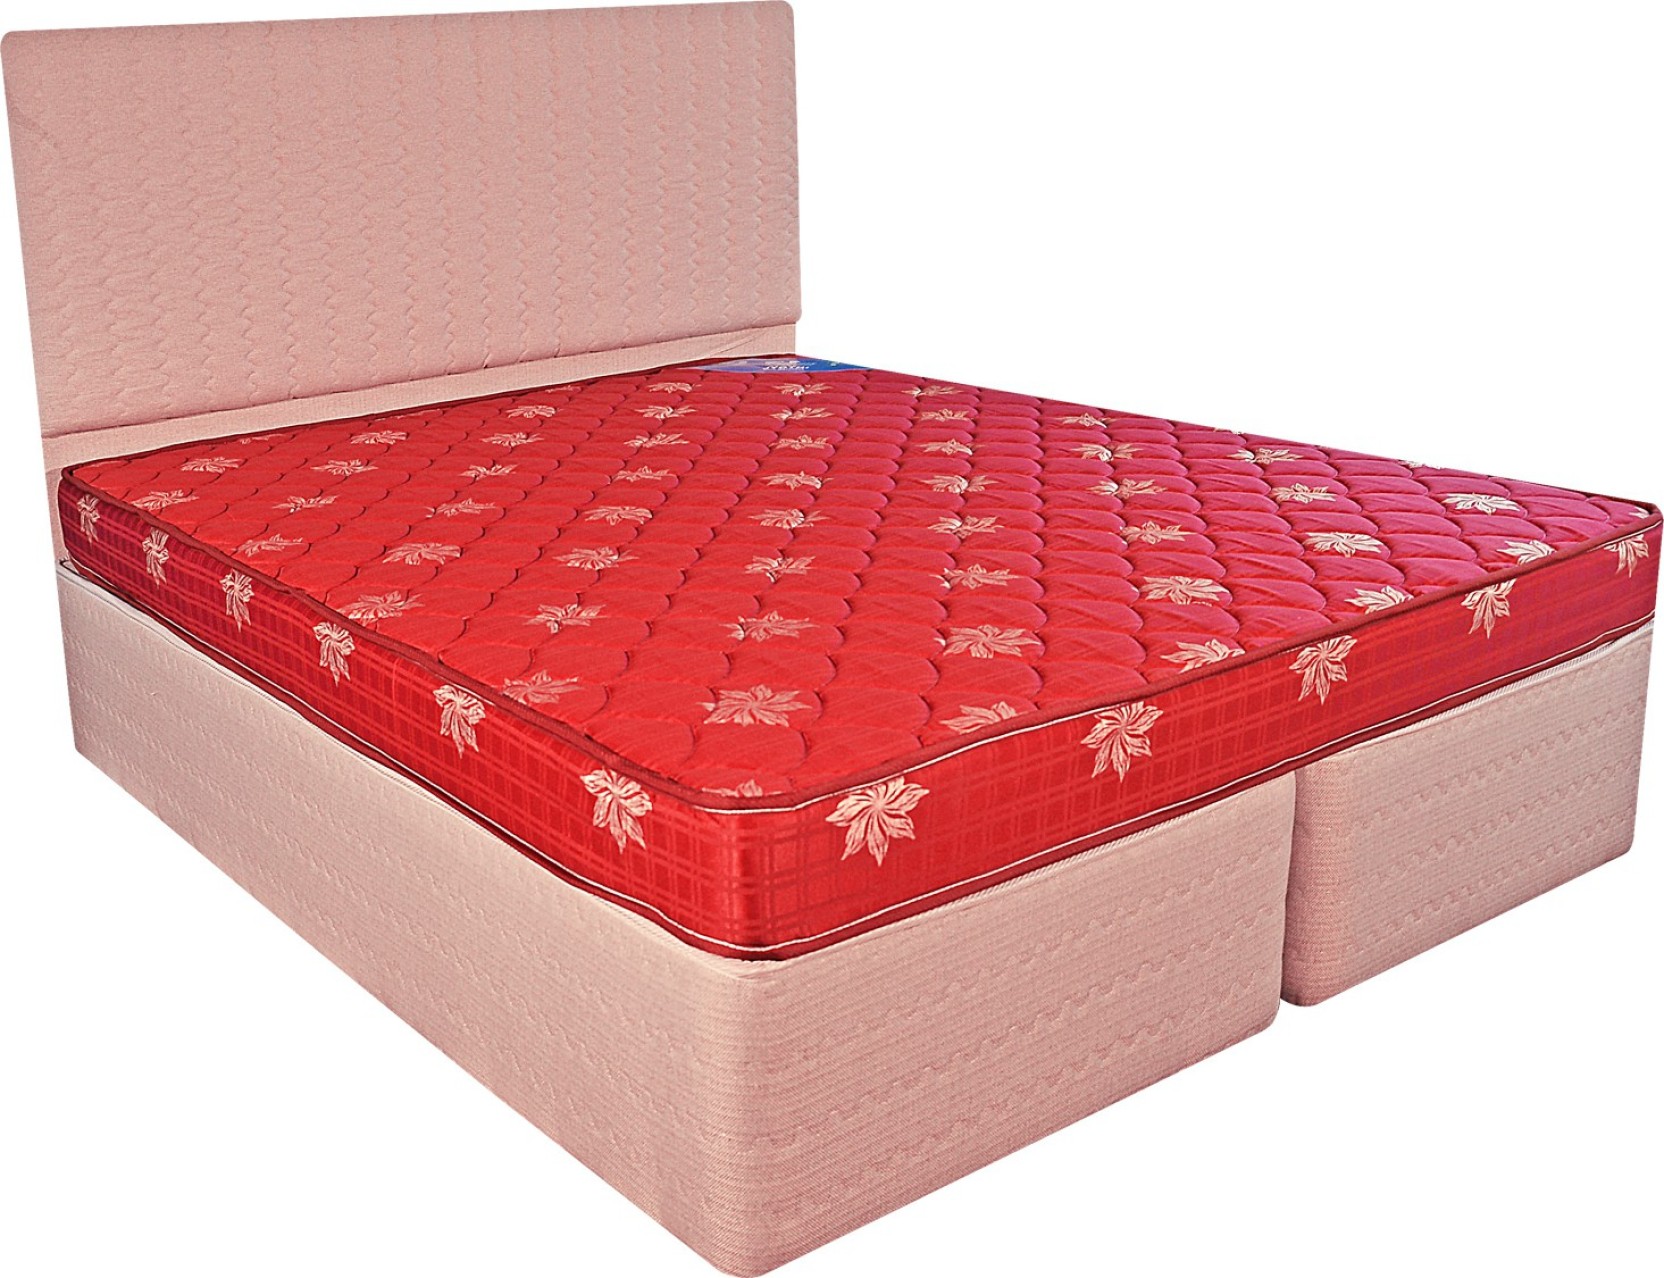 century jyothi mattress price